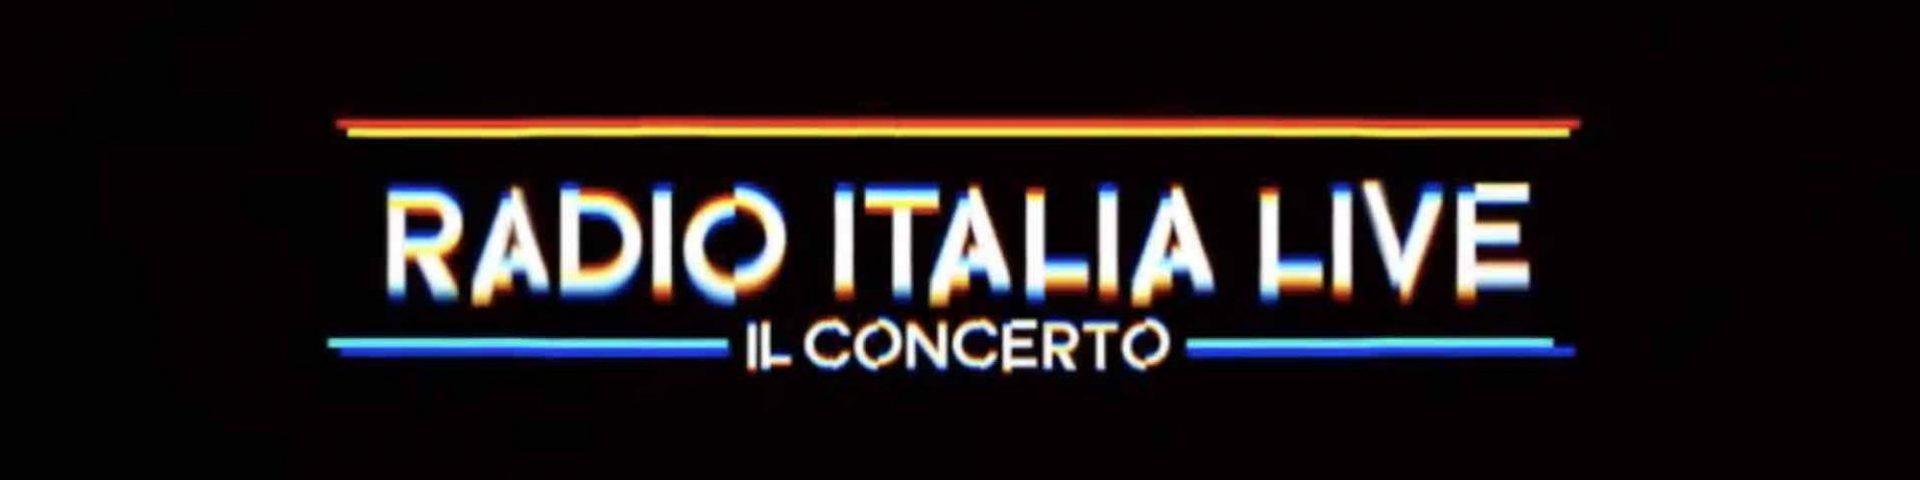 Radio Italia Live – Il Concerto 2019 a Palermo: scaletta e ordine di uscita